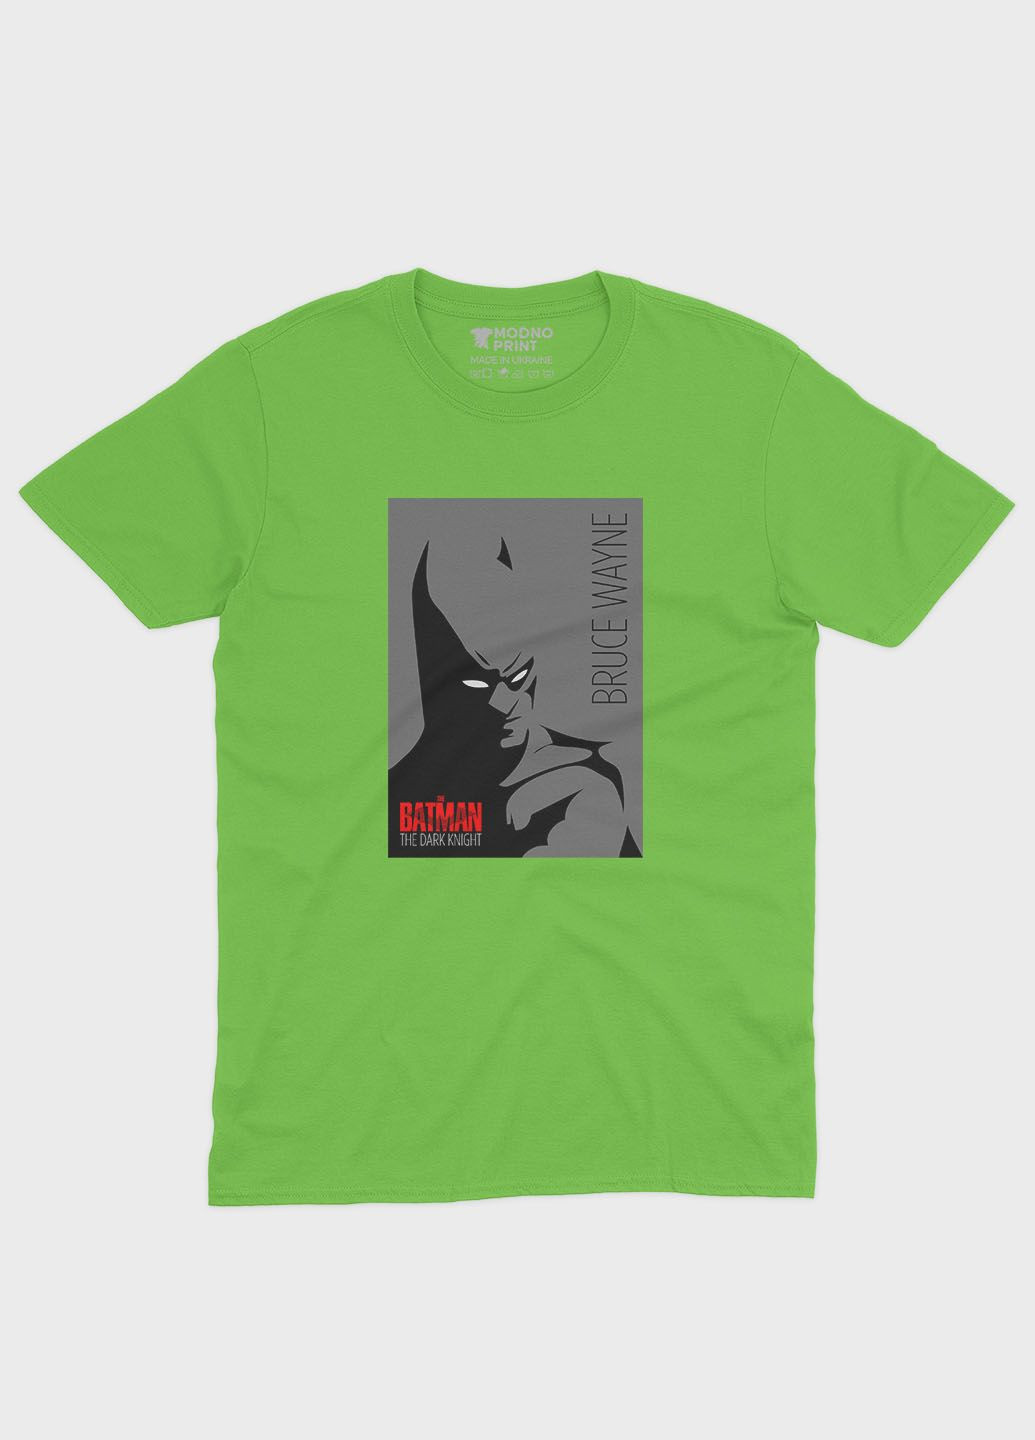 Салатовая демисезонная футболка для мальчика с принтом супергероя - бэтмен (ts001-1-kiw-006-003-031-b) Modno